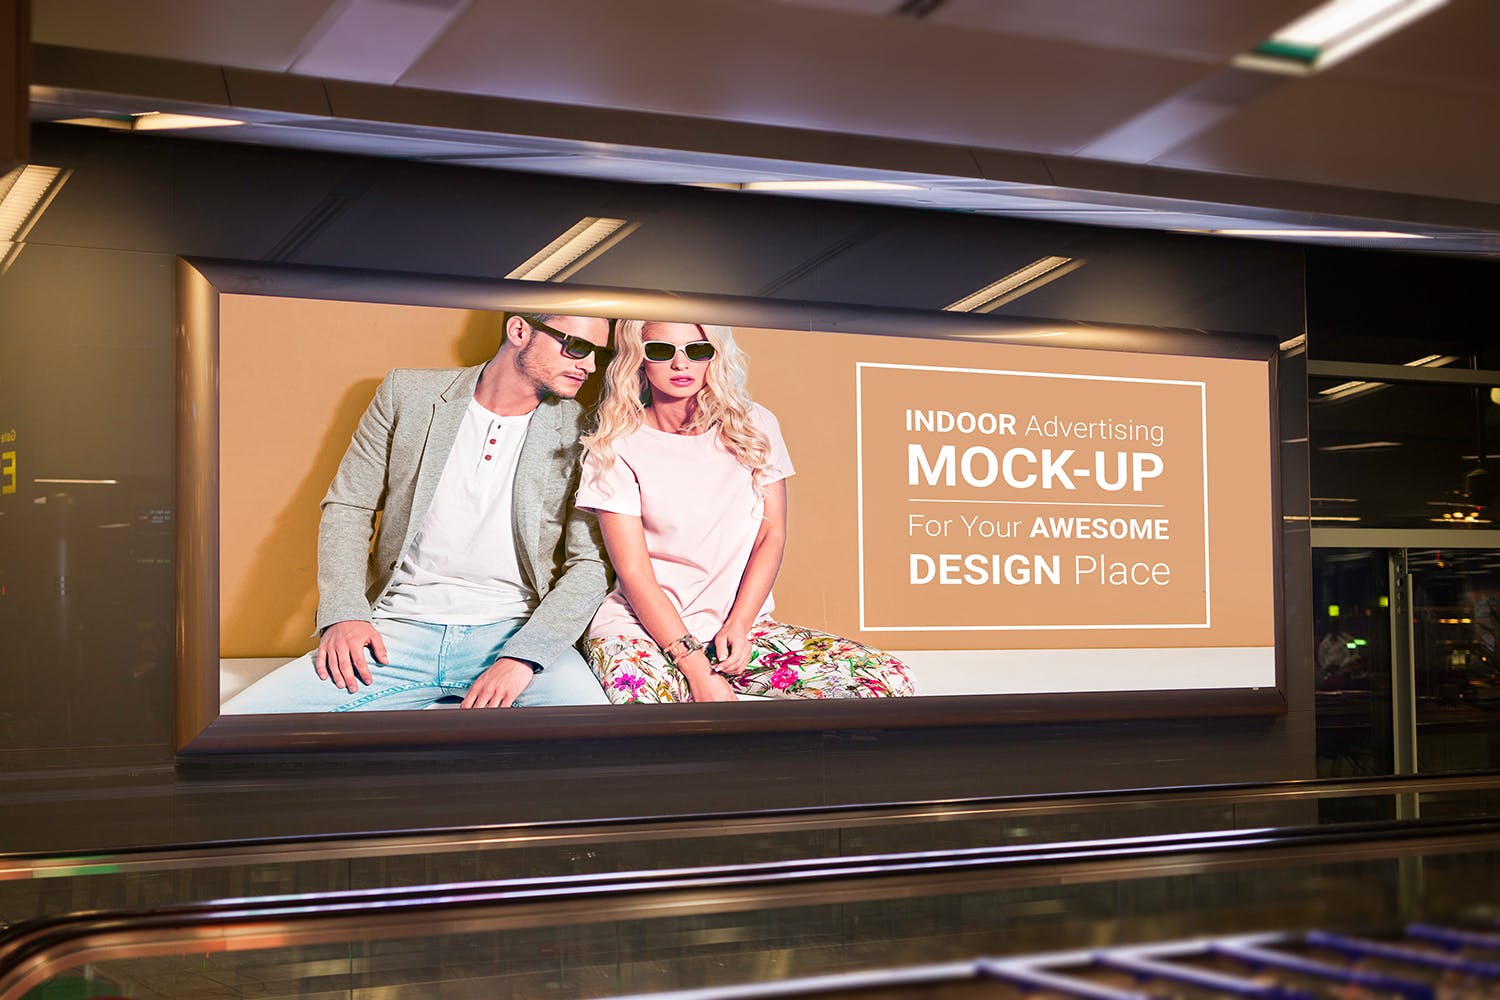 室内广告牌图片效果图样机模板 Indoor Advertising Mock-Up插图(6)